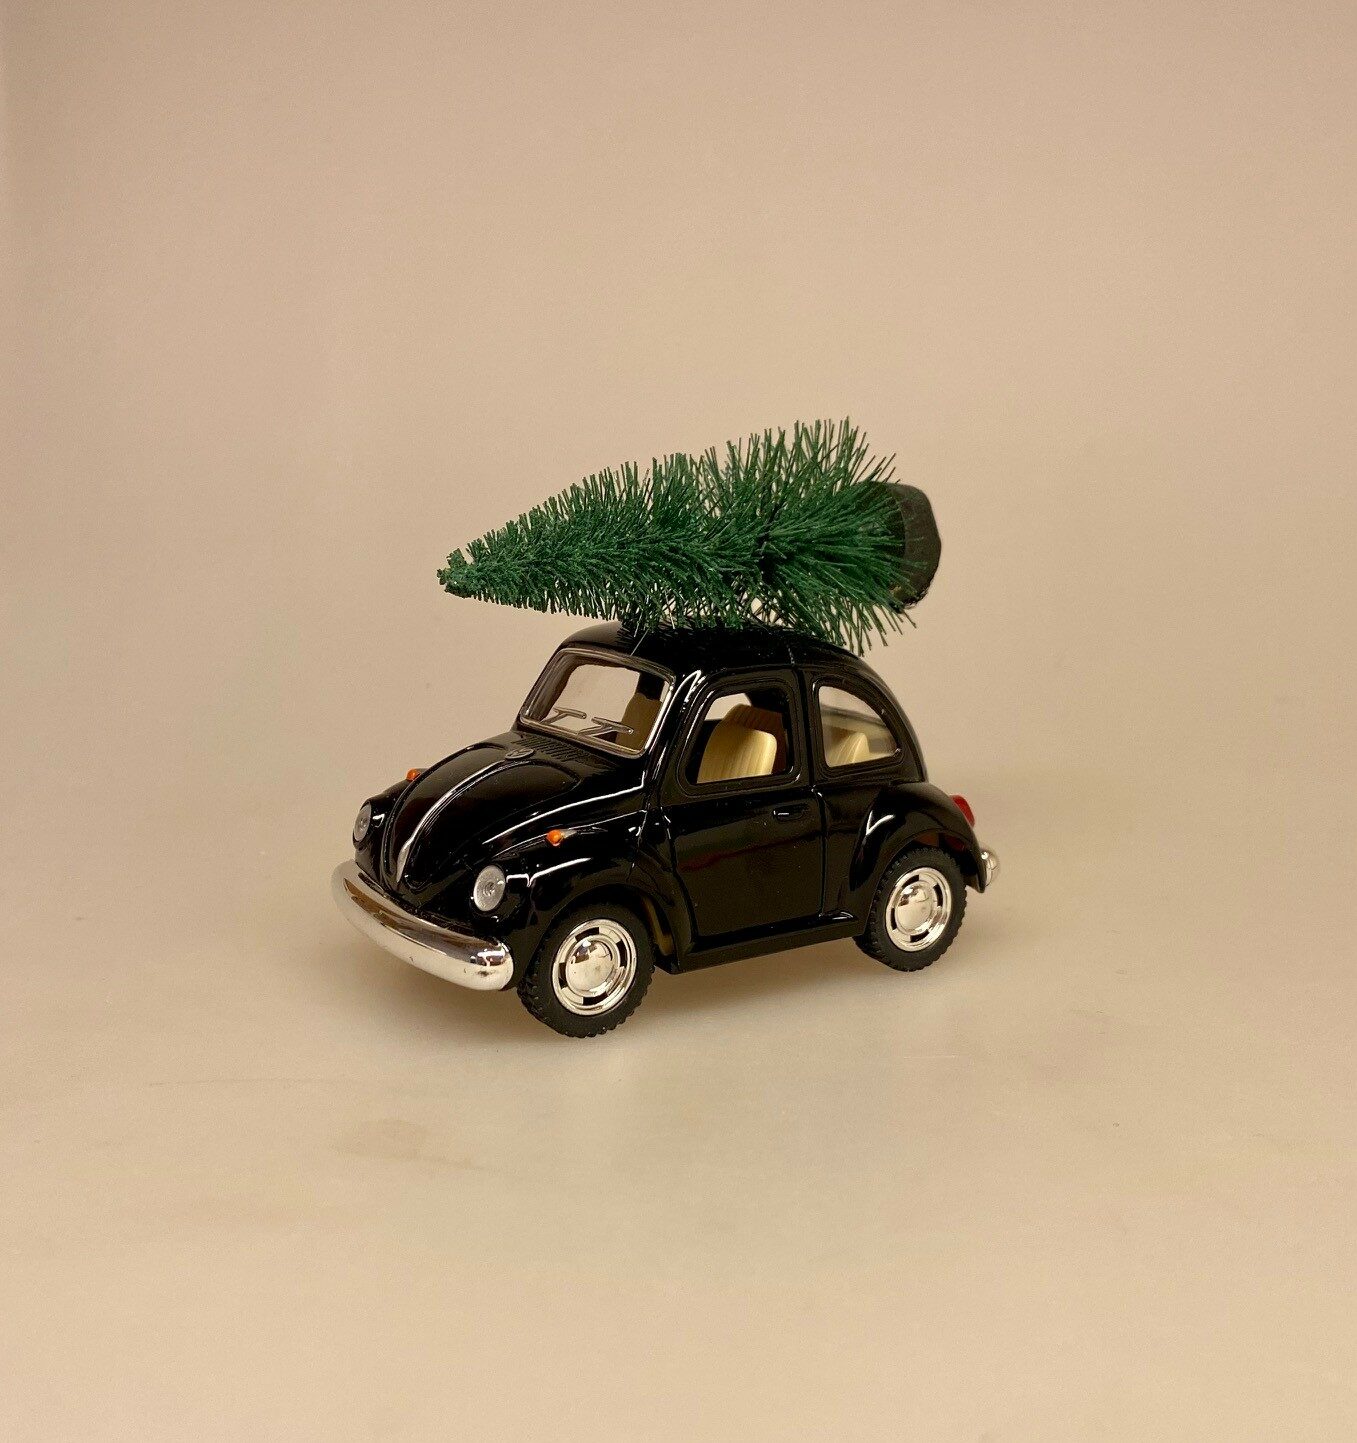 VW Folkevogn Mini Bobbel med Juletræ - Sort, julebil, grantræ, juletræ, på taget, driving, home, 4, for, xmas, christmas, julepynt, sjov, fin, modelbil, bobbel, boble, folkevogn, volkswagen, metal, bil, biti, ribe